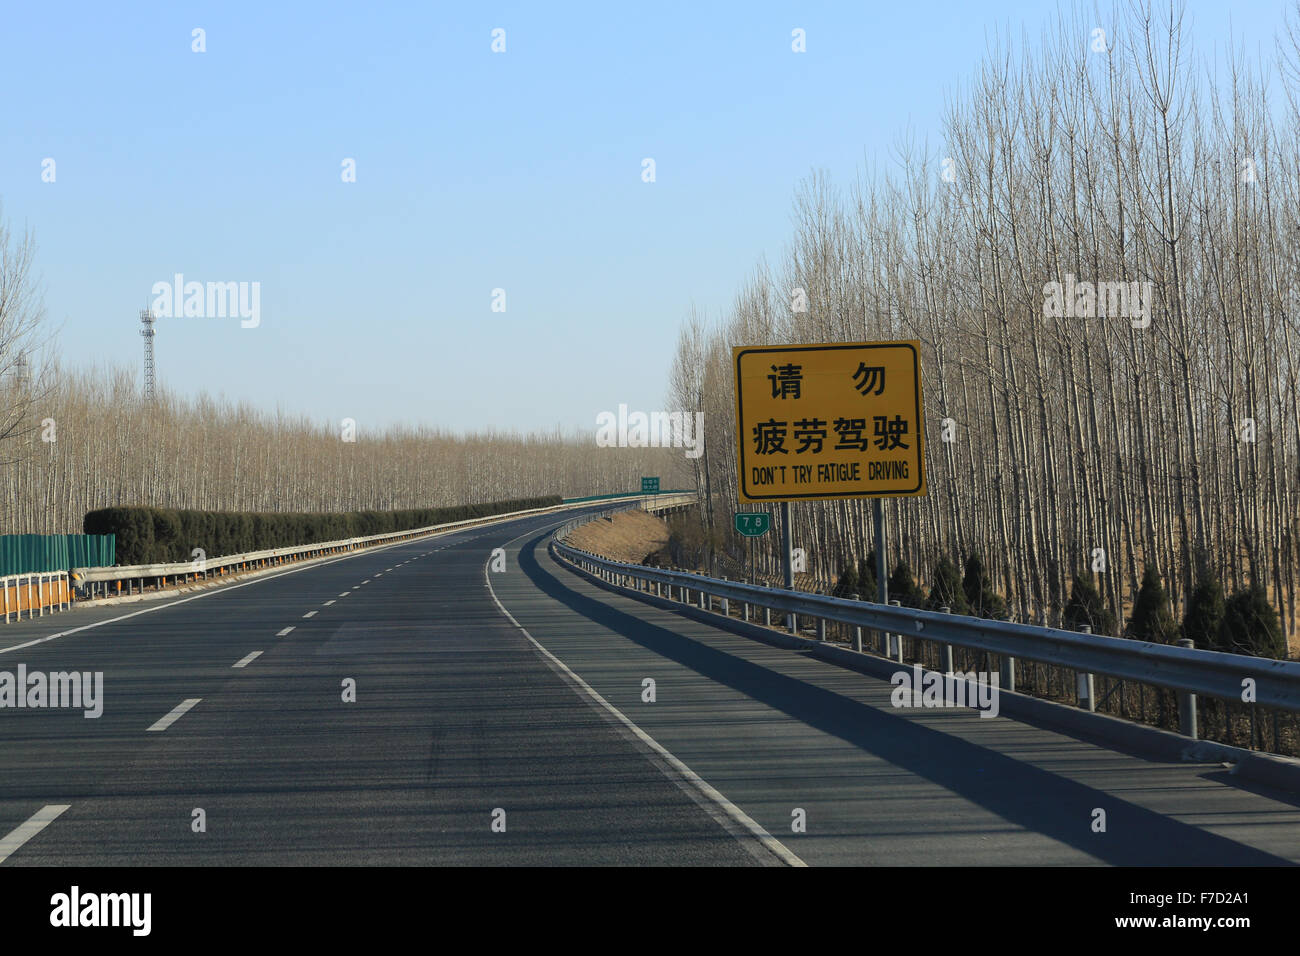 Señal de carretera chino: No intente conducir la fatiga. Jinji Expressway rumbo norte hacia la Gran Muralla. Foto de stock